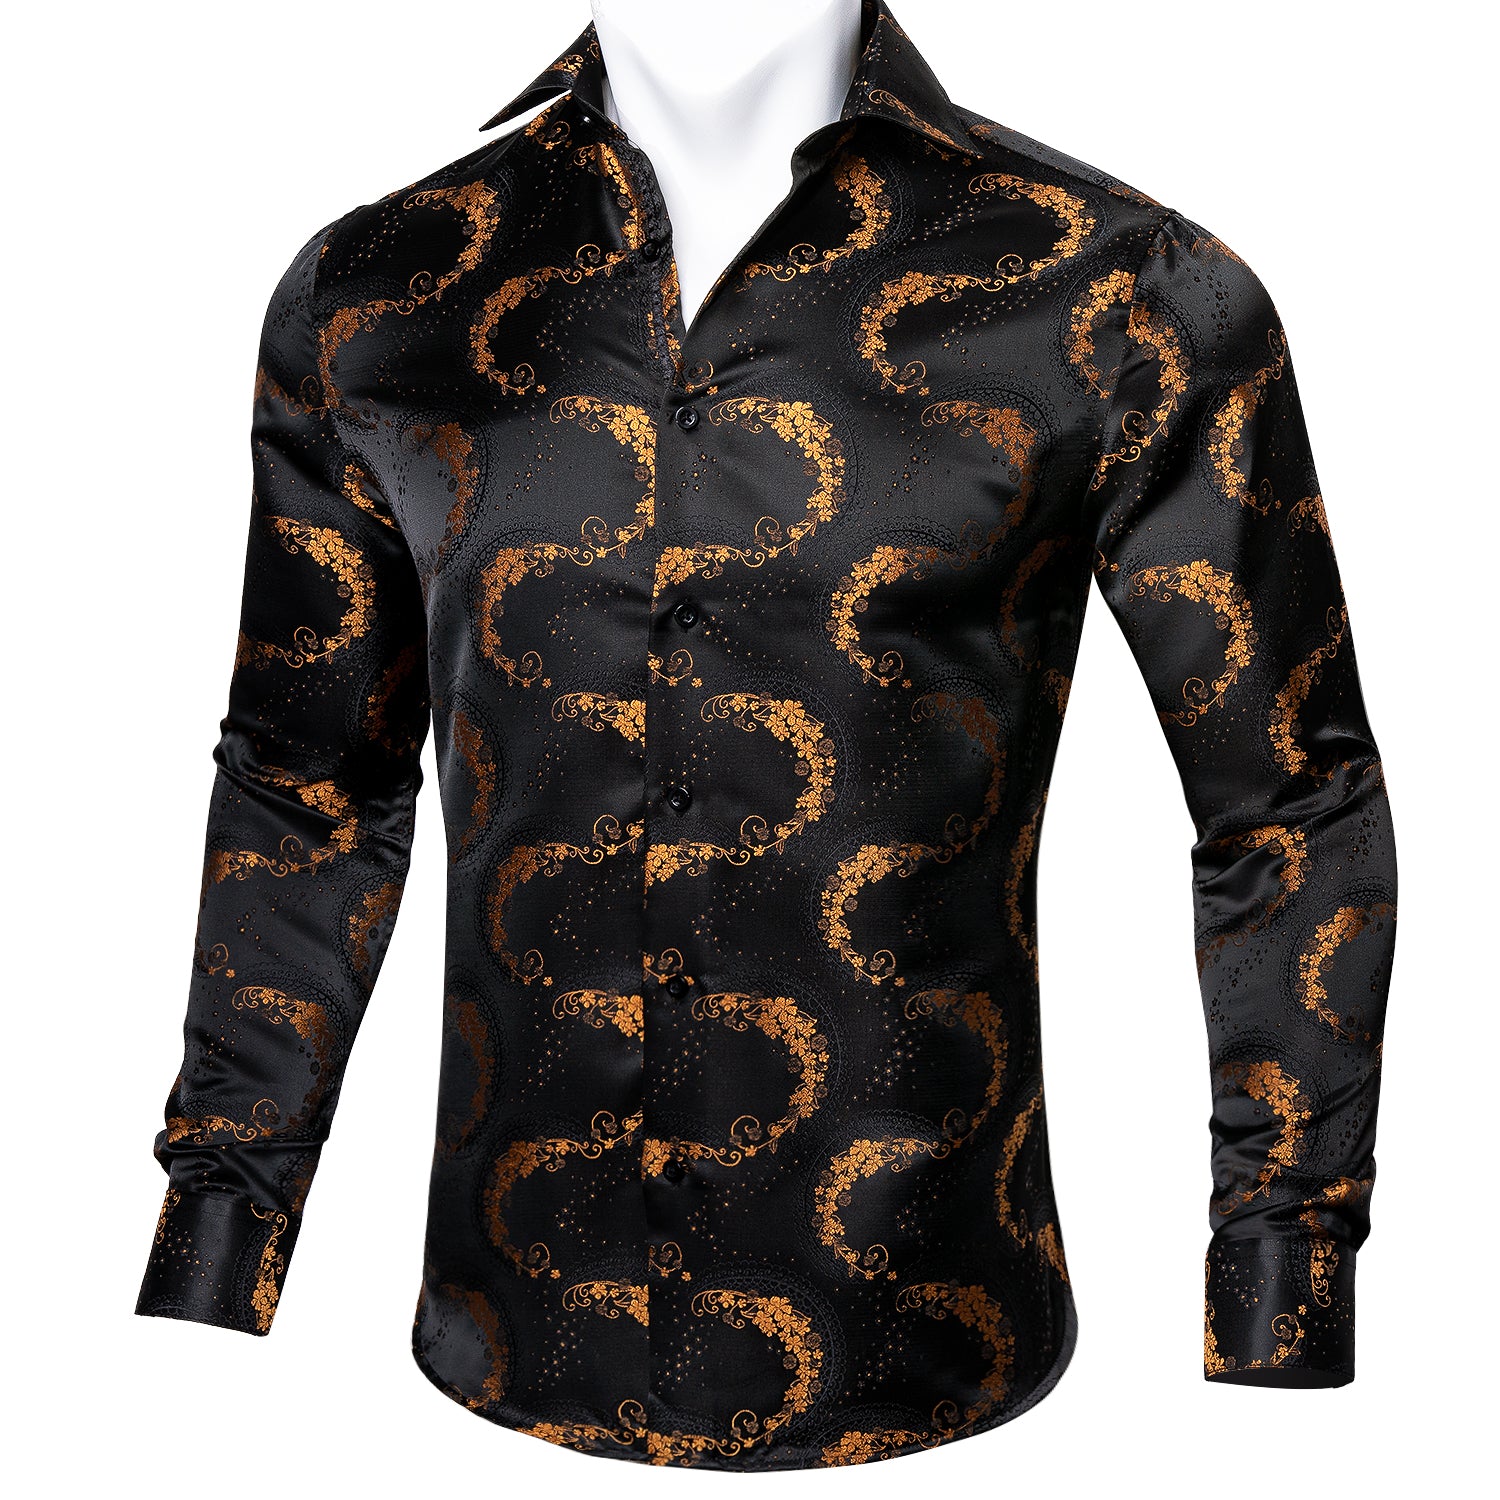 Barry.wang Black Golden Paisley Silk Floral Button Up Shirt